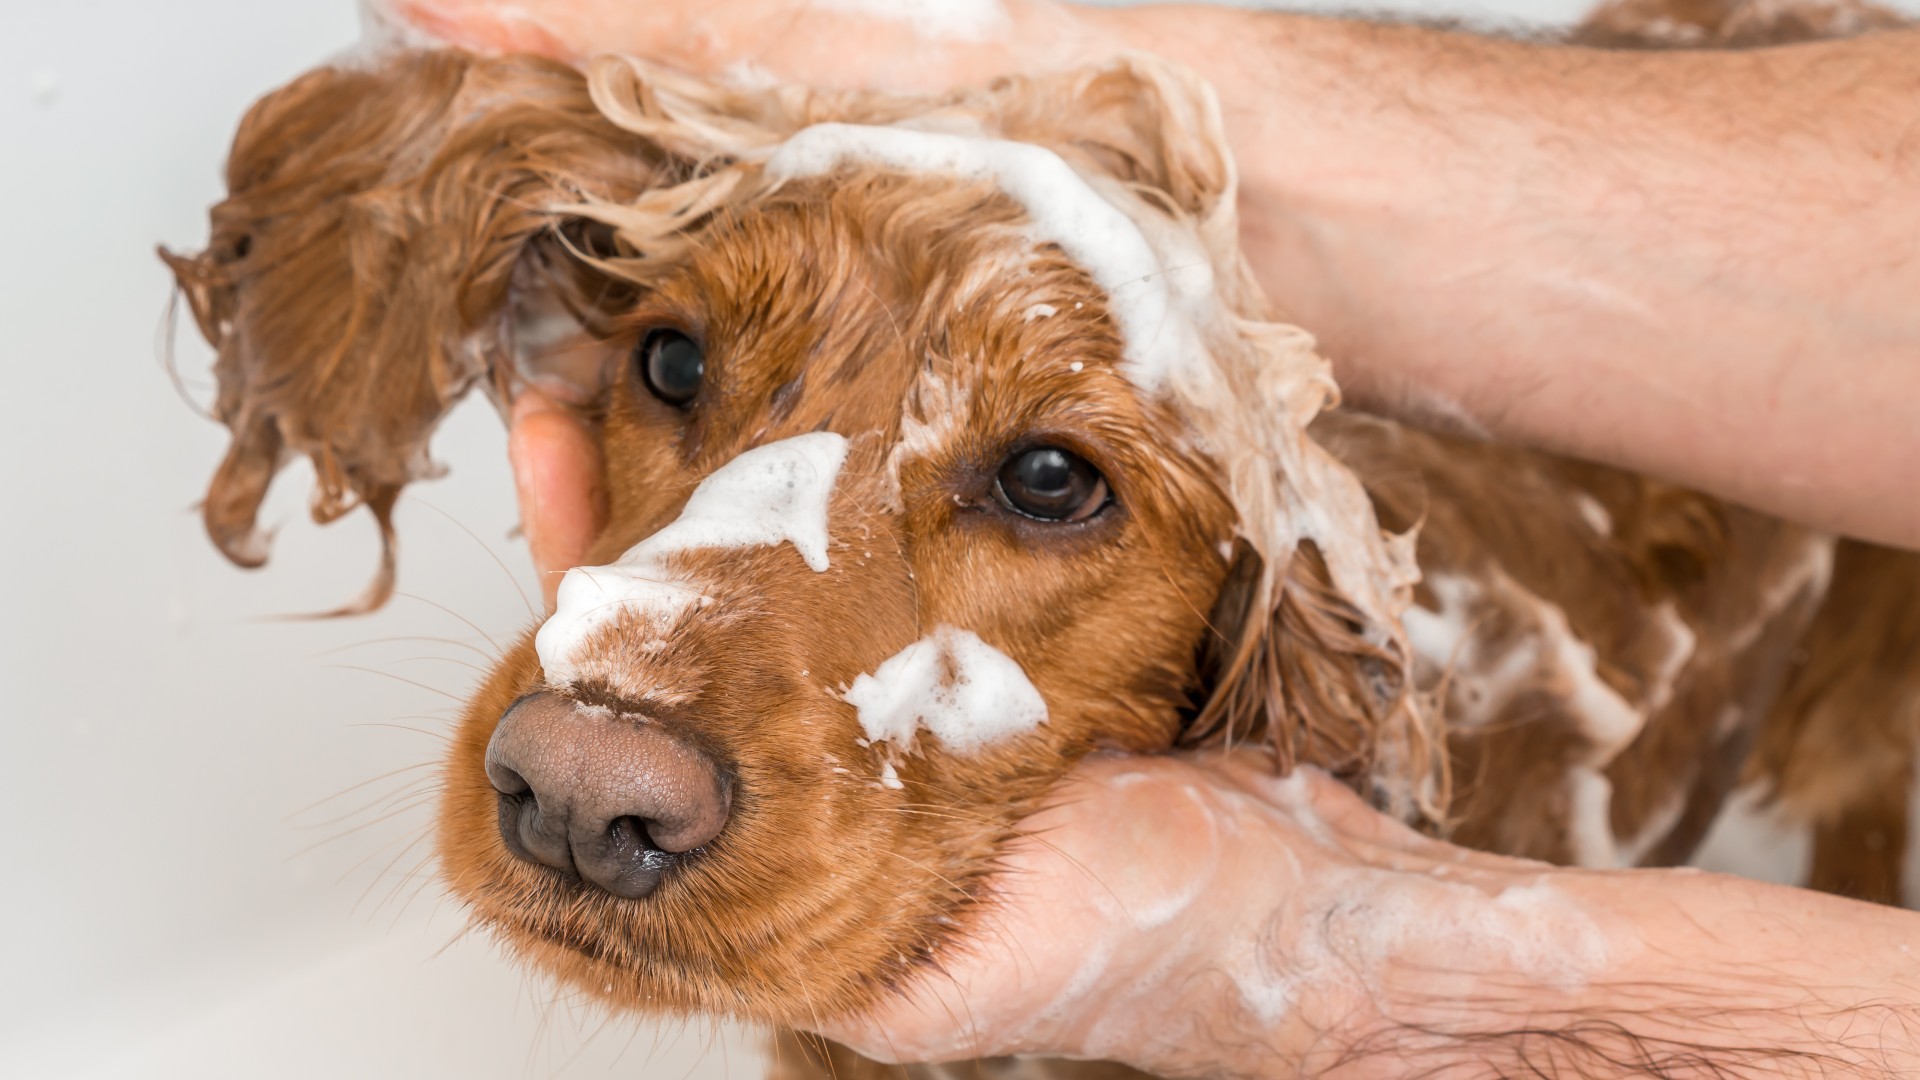 Arthur Conan Doyle hvorfor ikke klon Can you use human shampoo on a dog? | PetsRadar